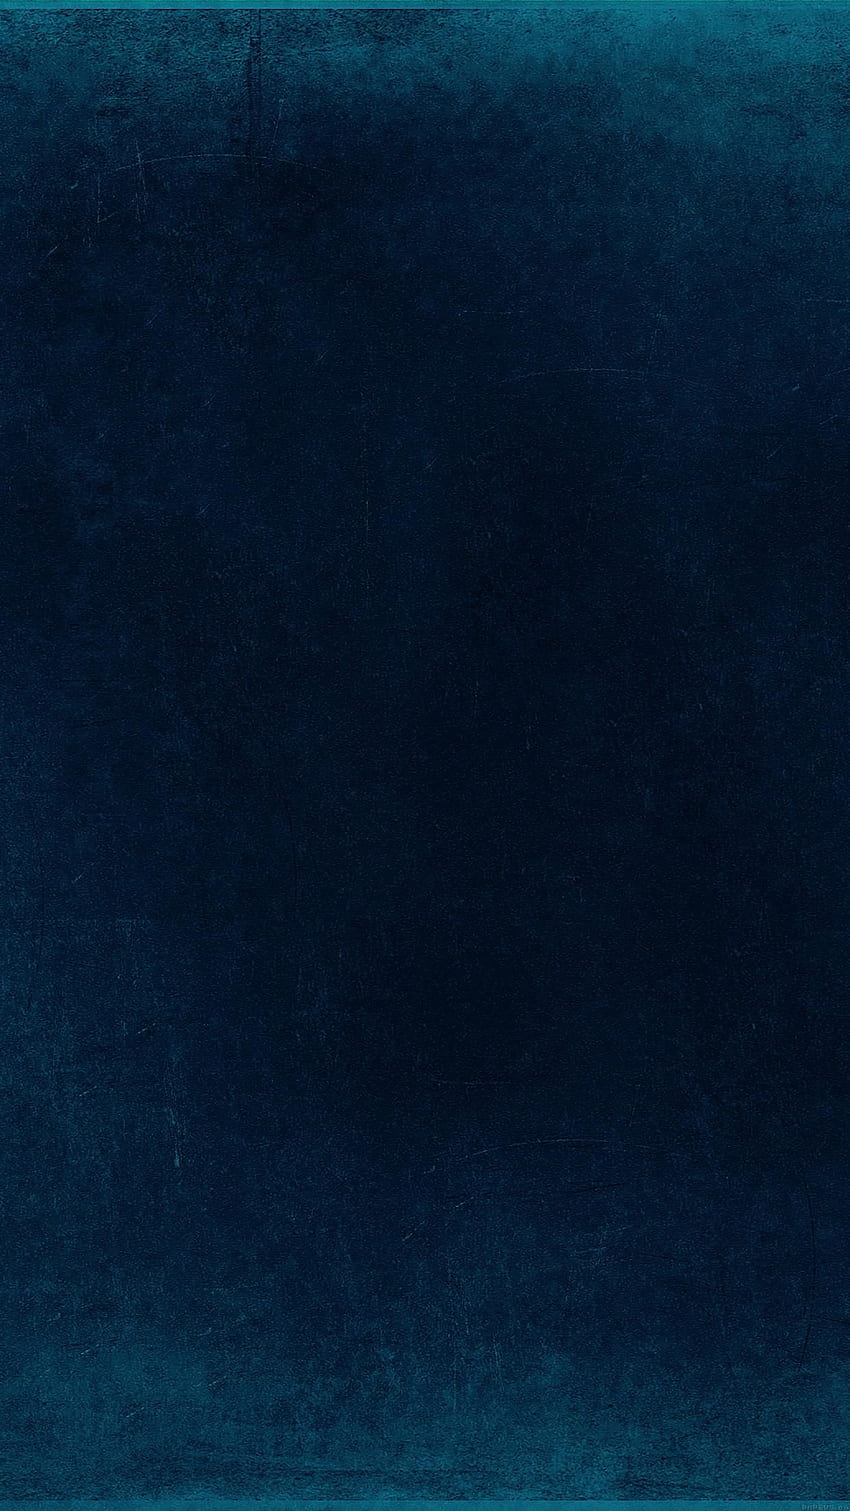 Arte impresionante de textura azul de ancha iPhone 6s, Best 6s fondo de pantalla del teléfono